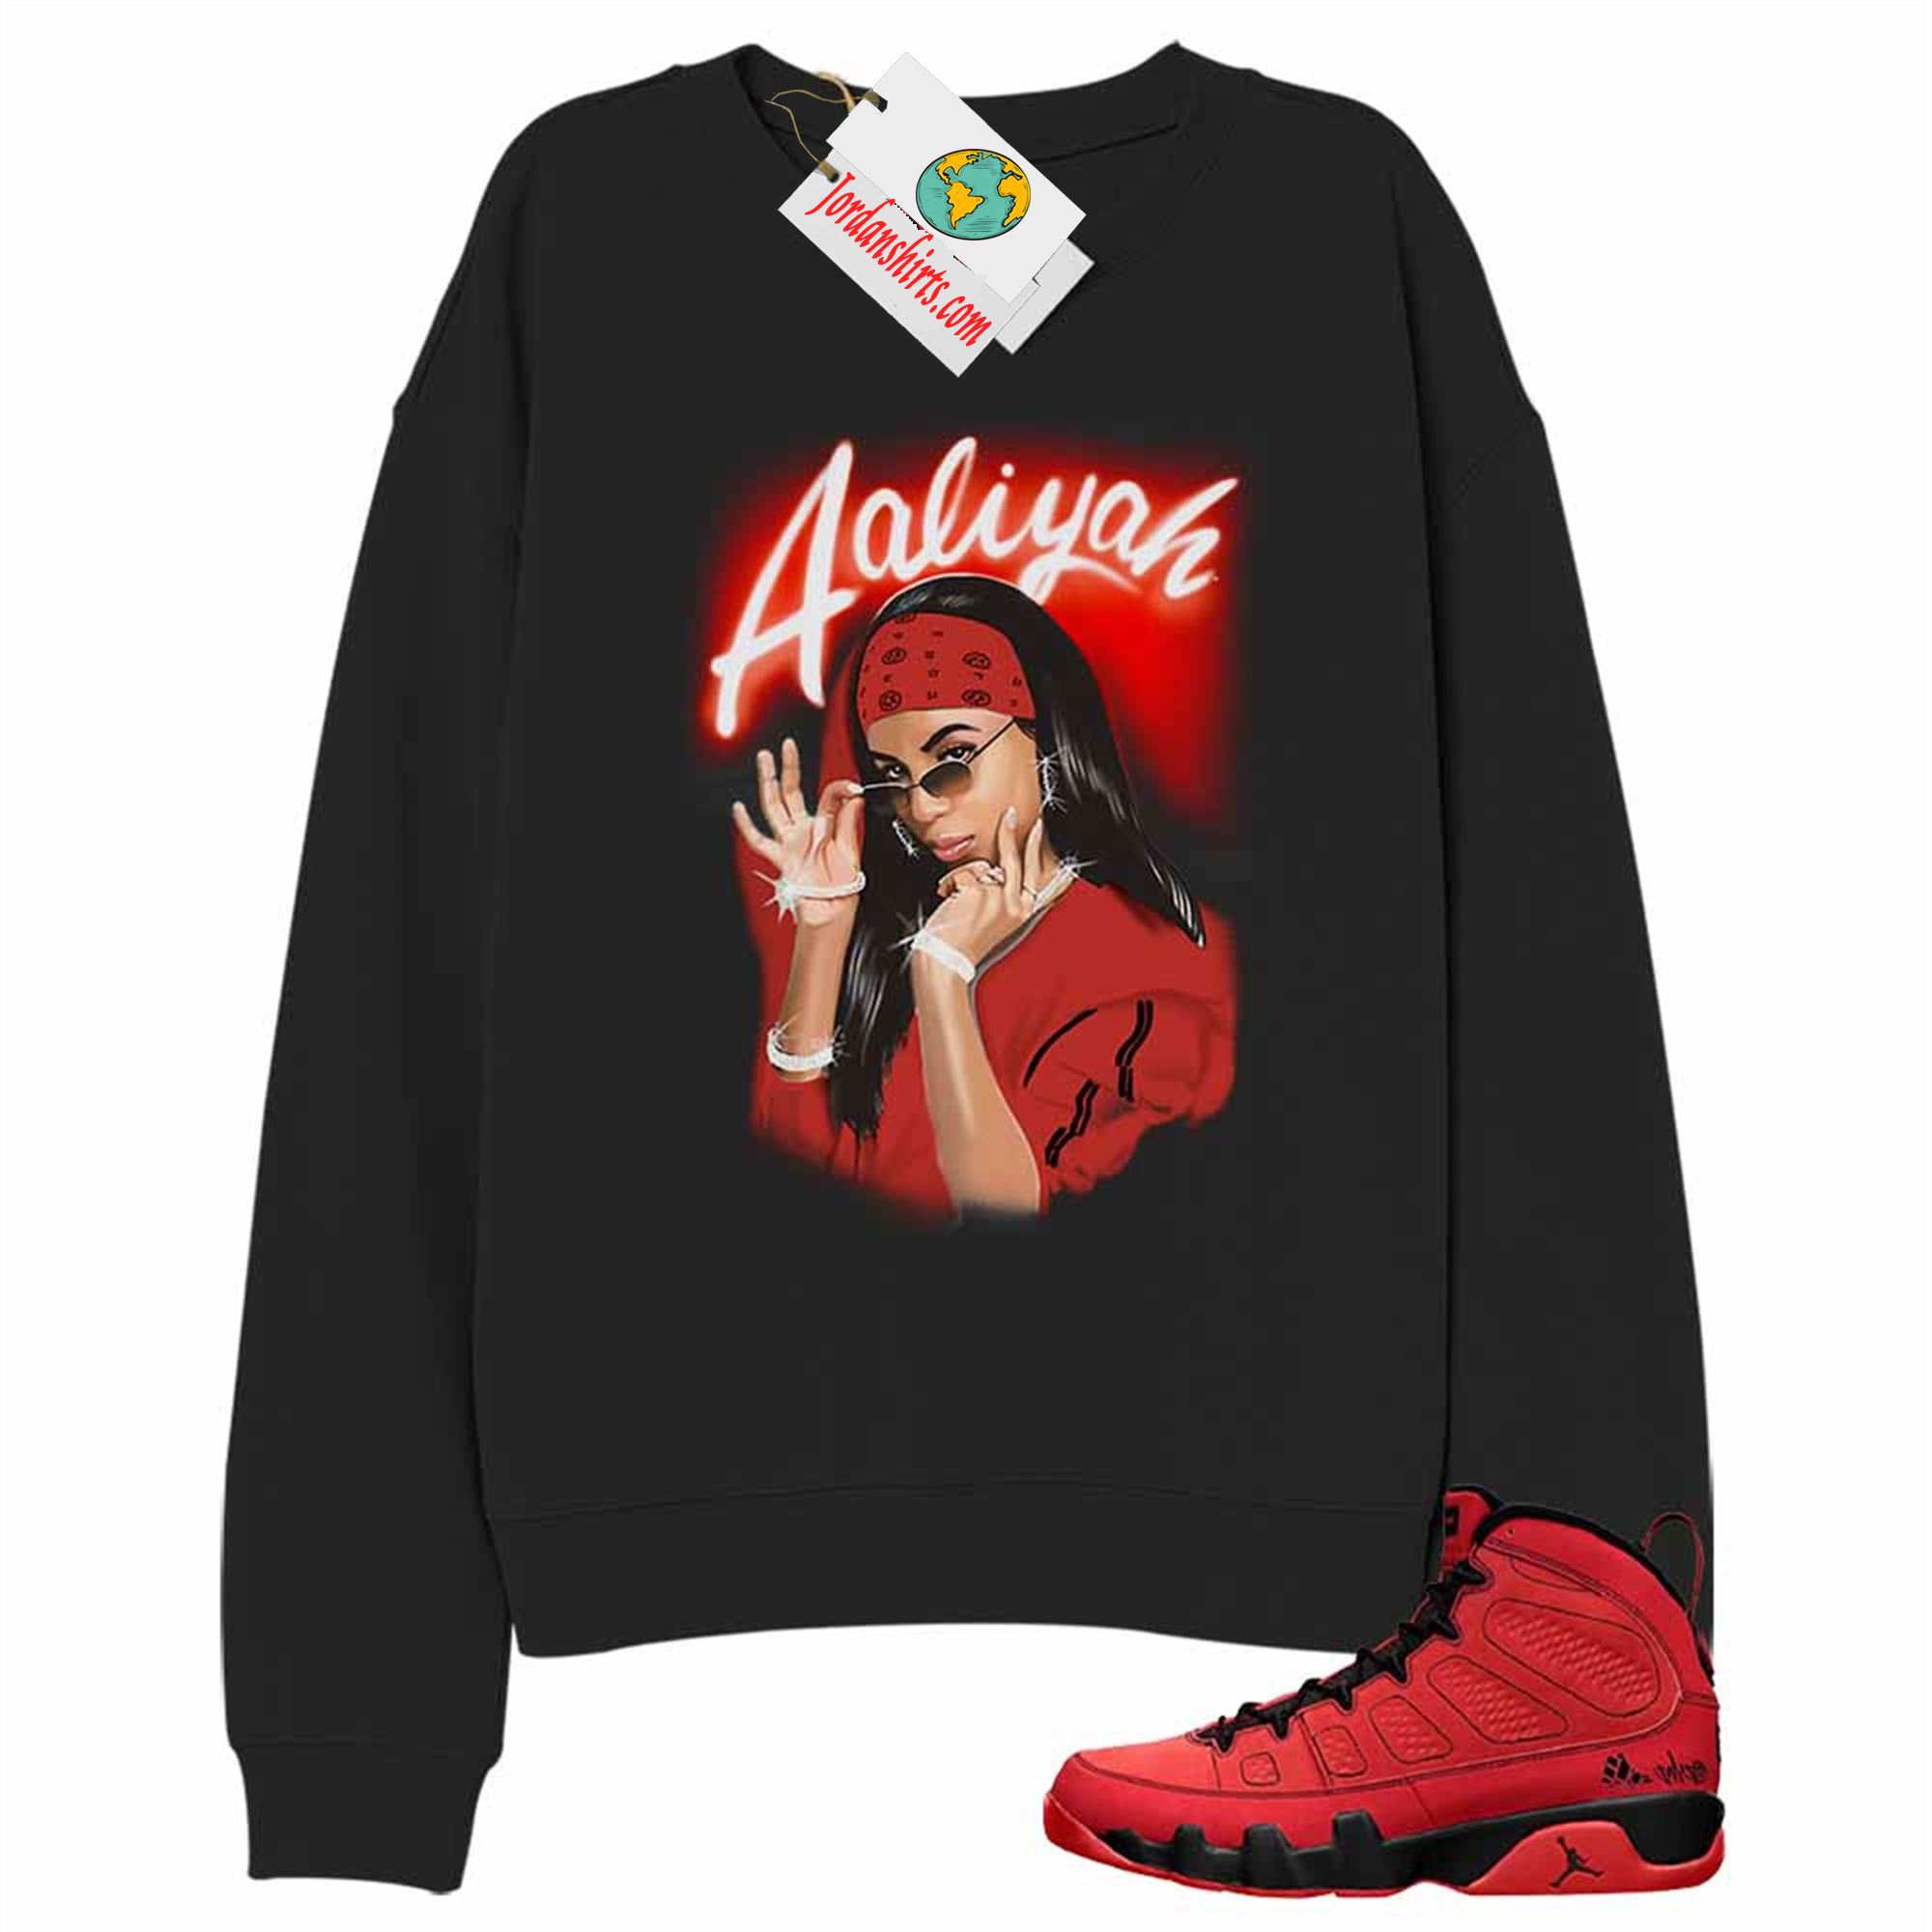 Jordan 9 Sweatshirt, Aaliyah Airbrush Black Sweatshirt Air Jordan 9 Chile Red 9s Full Size Up To 5xl